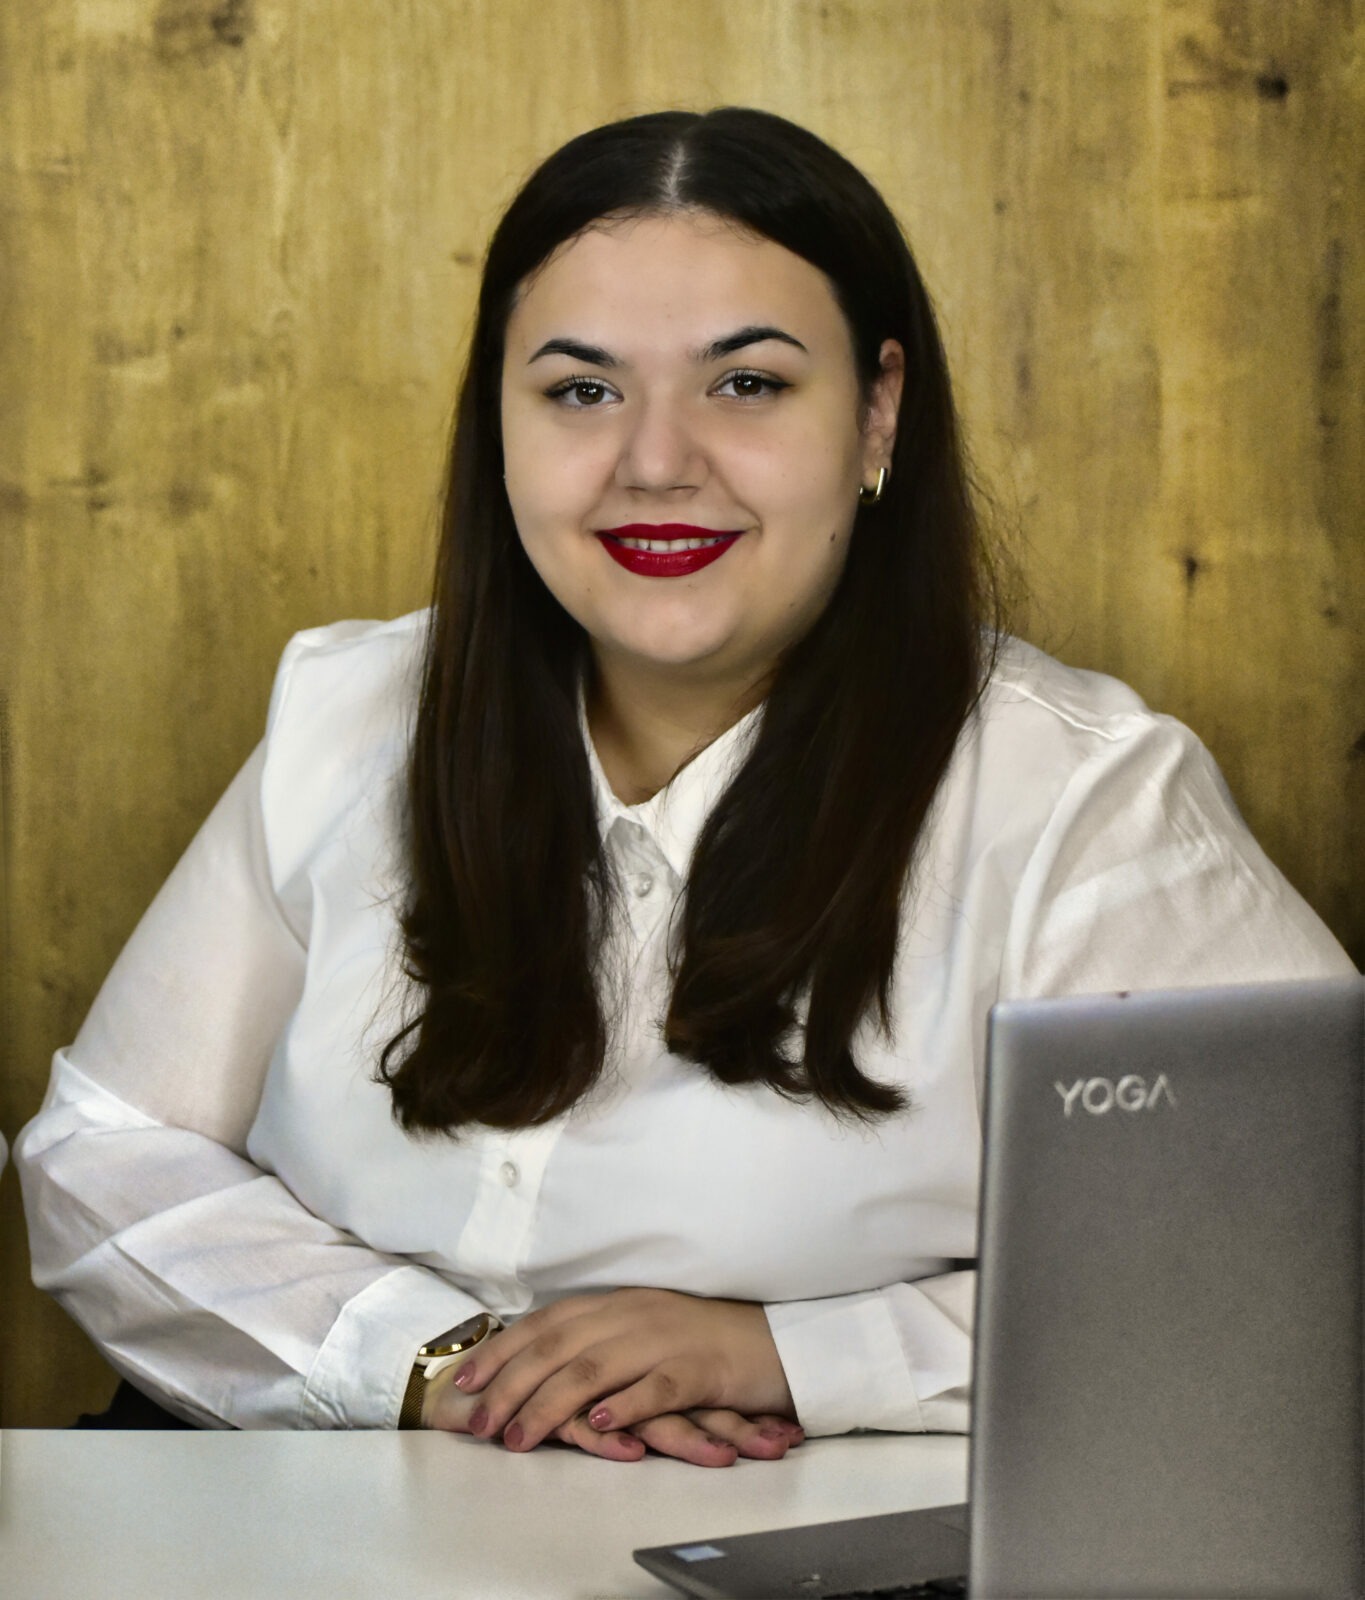 Profilová fotka finančného sprostredkovateľa, Anity Klimkovej